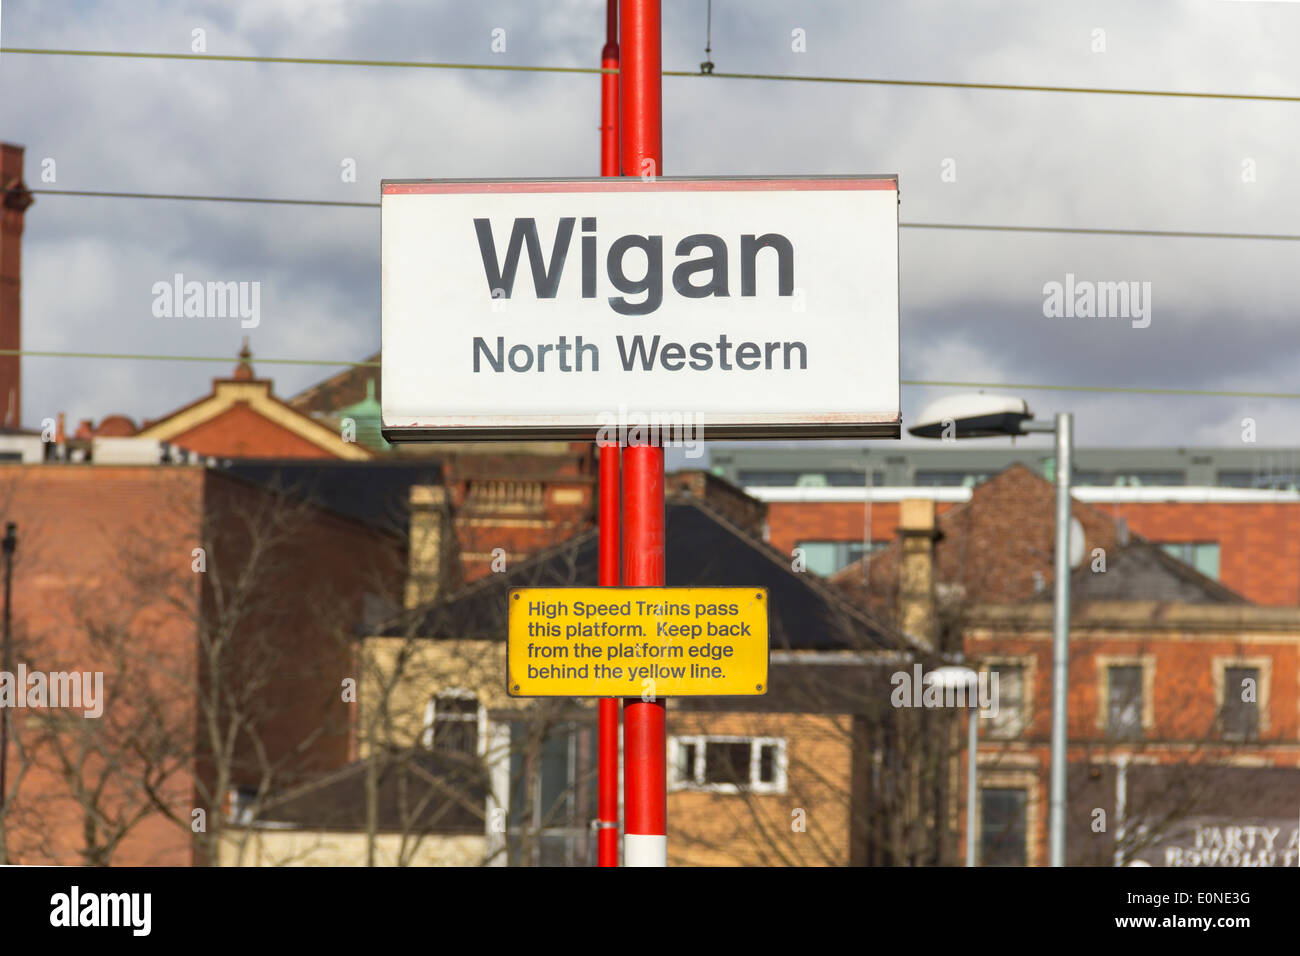 Wigan North Western West Coast Main Line Railway station, signer et d'avertissement de garder l'arrière de la plate-forme edge. Banque D'Images